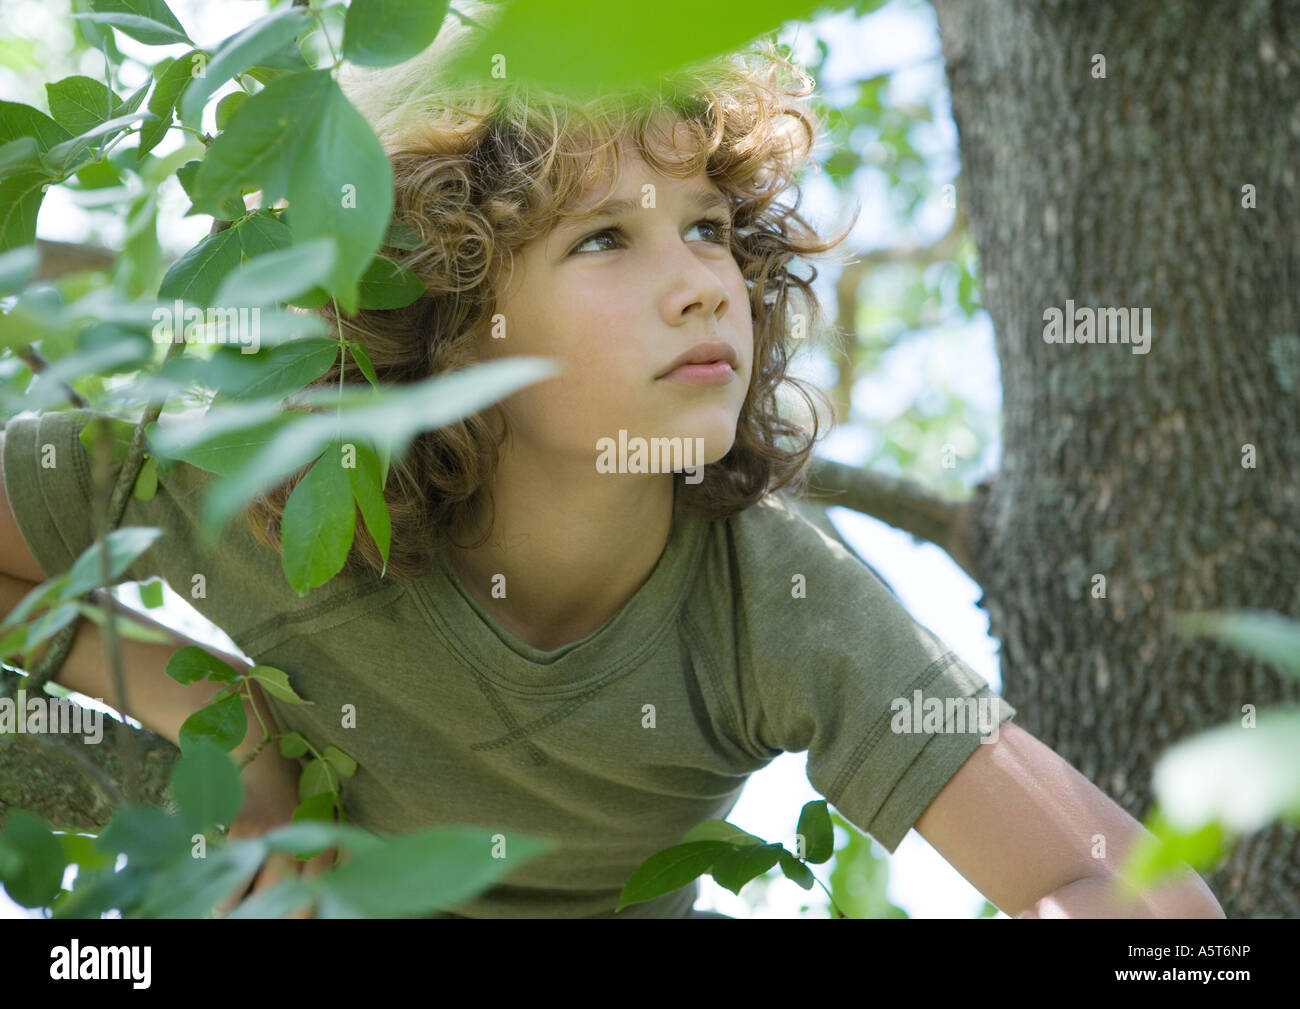 Boy in tree Stock Photo - Alamy